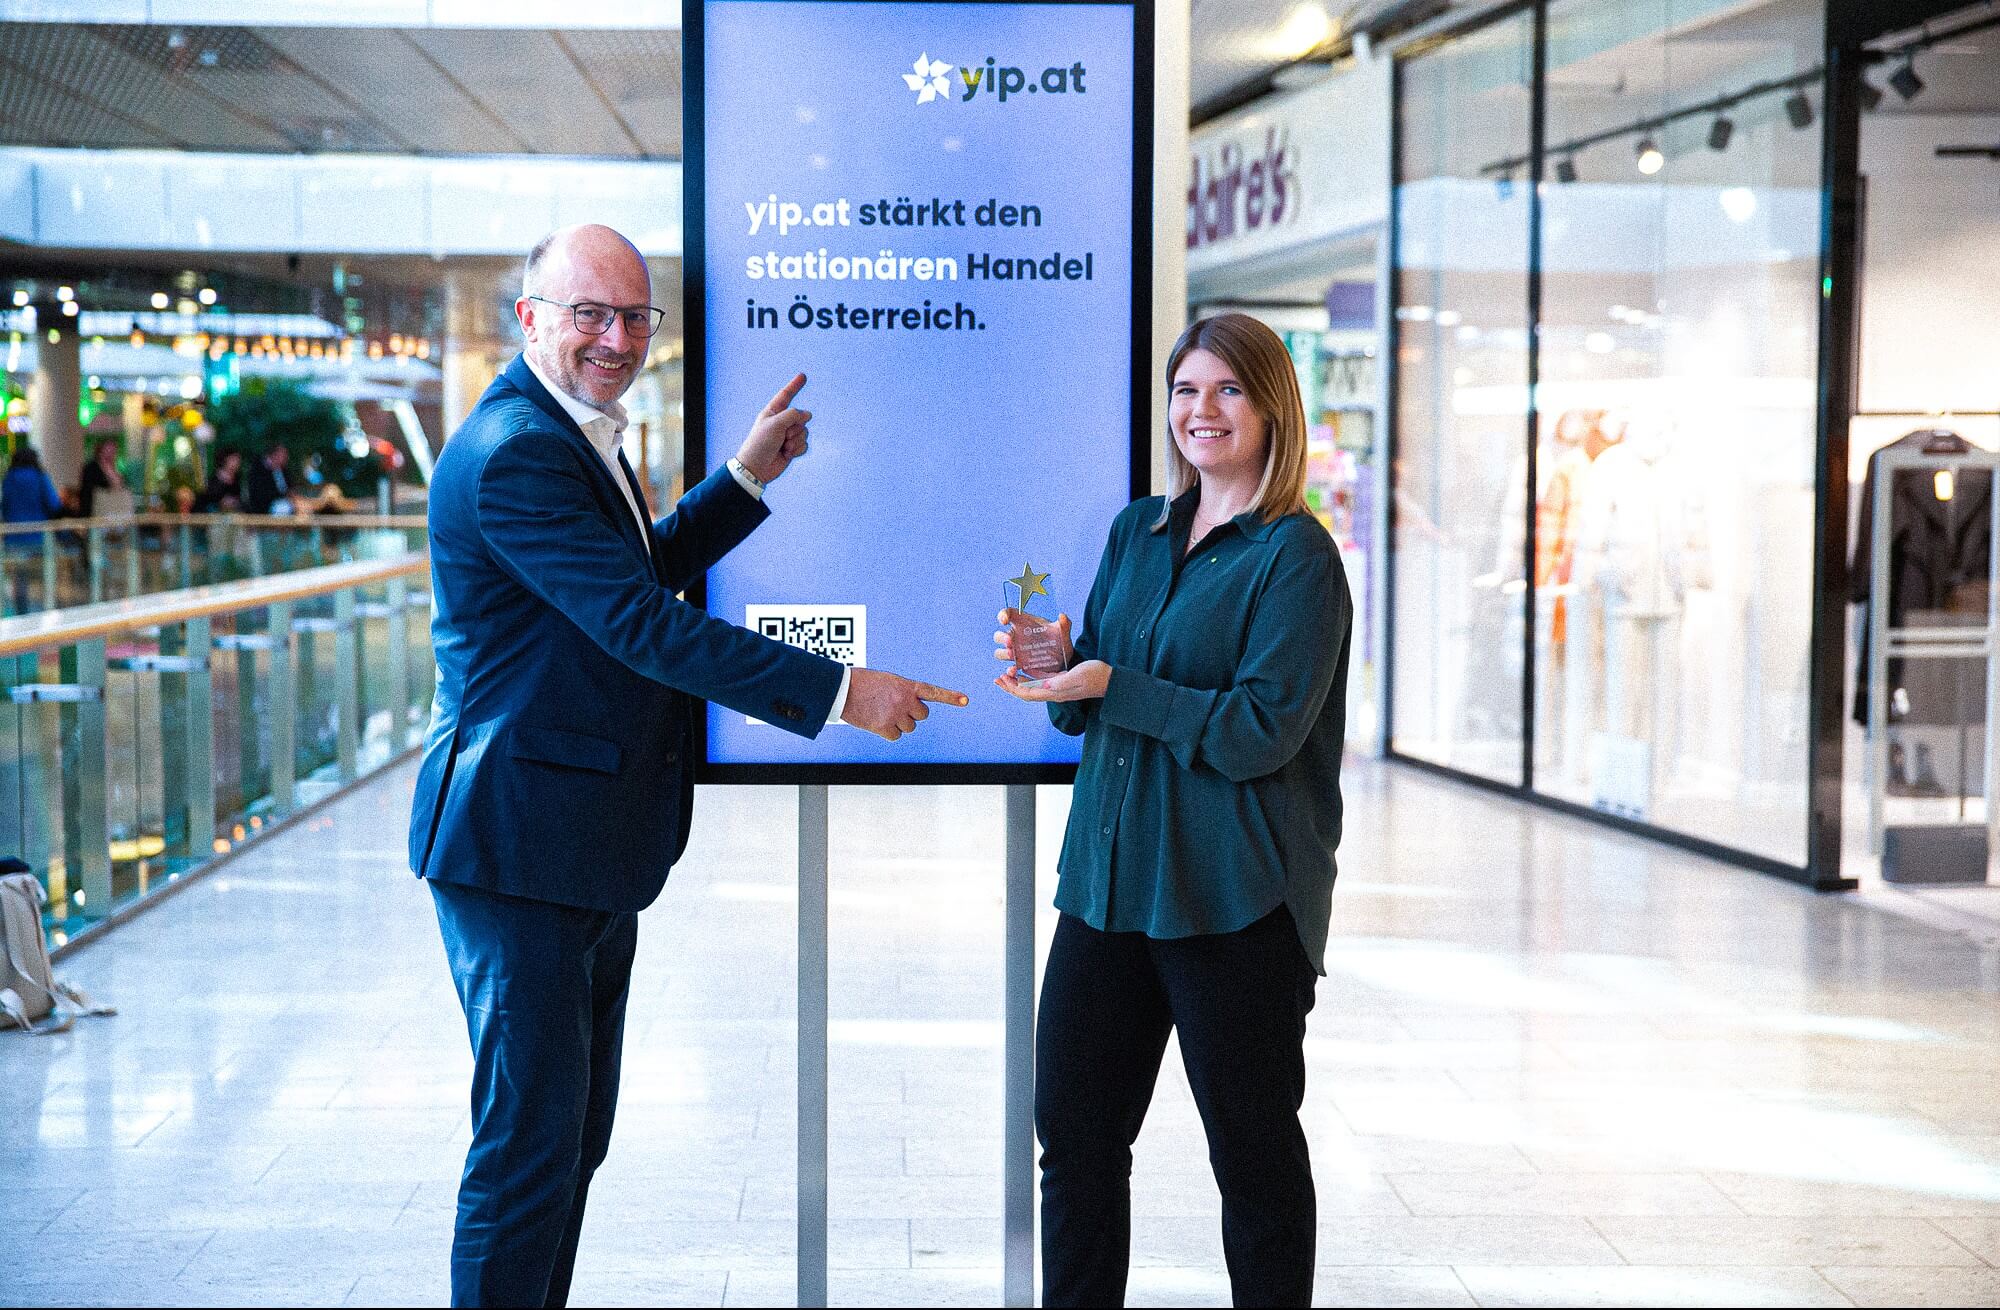 Frau mit grüner Bluse und European Solal Award in der Hand und Mann im Anzug der auf eine Werbeanzeige zeigt auf der steht "yip.at stärkt den stationären Handel in Österreich"